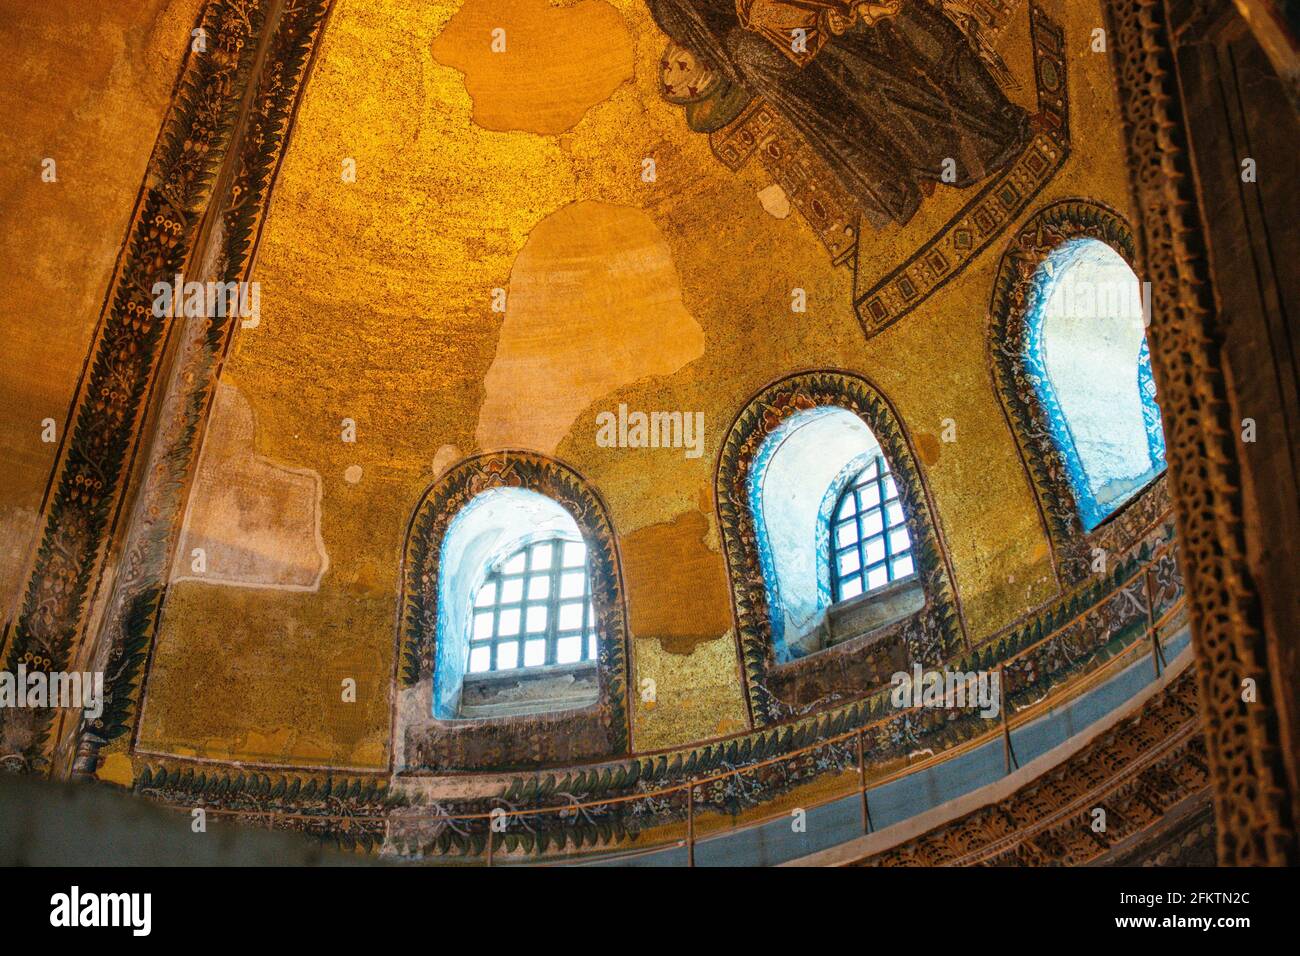 The Hagia Sophia moque interior architecture. Stock Photo